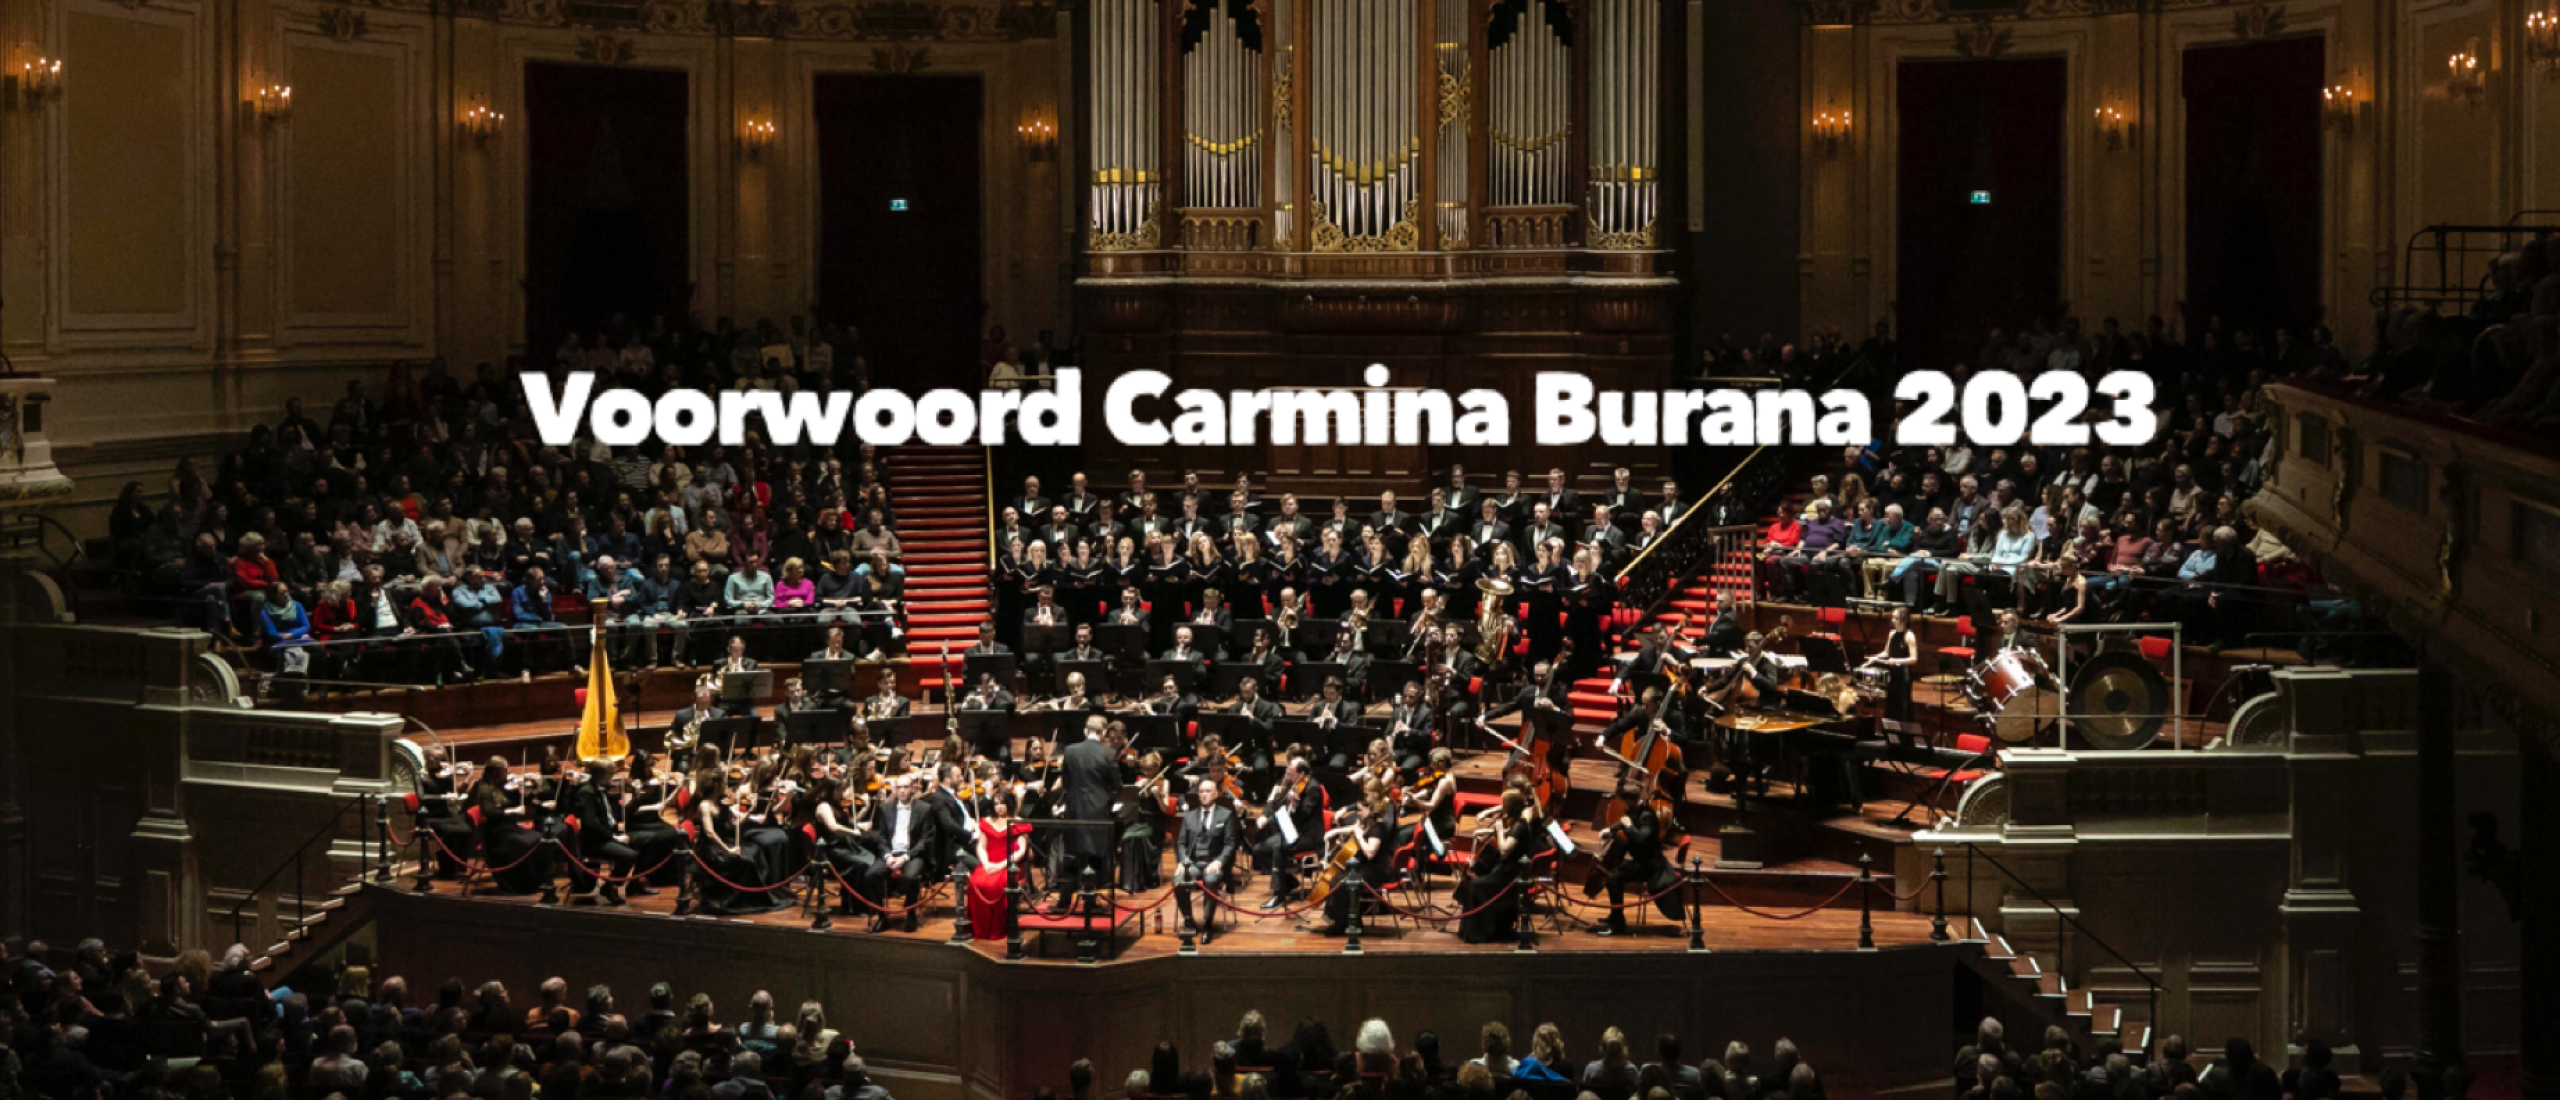 Voorwoord dirigent Raymond Janssen Carmina Burana 2023 De Magie van het moment